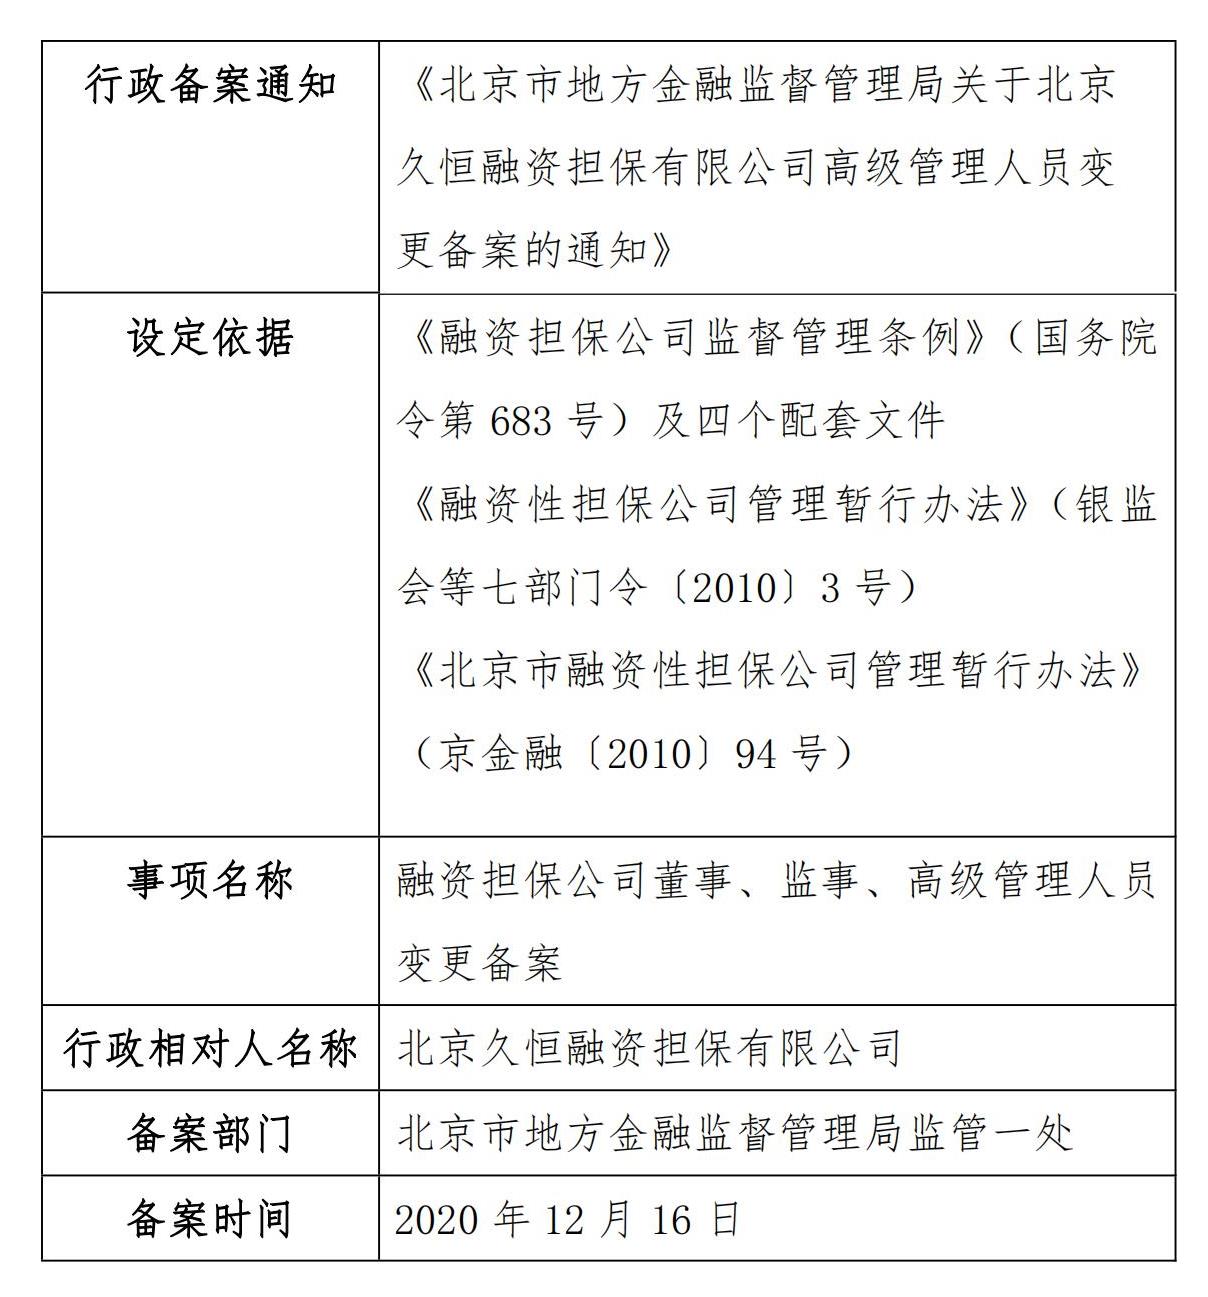 北京市地方金融监督管理局关于北京久恒融资担保有限公司高级管理人员变更备案的通知